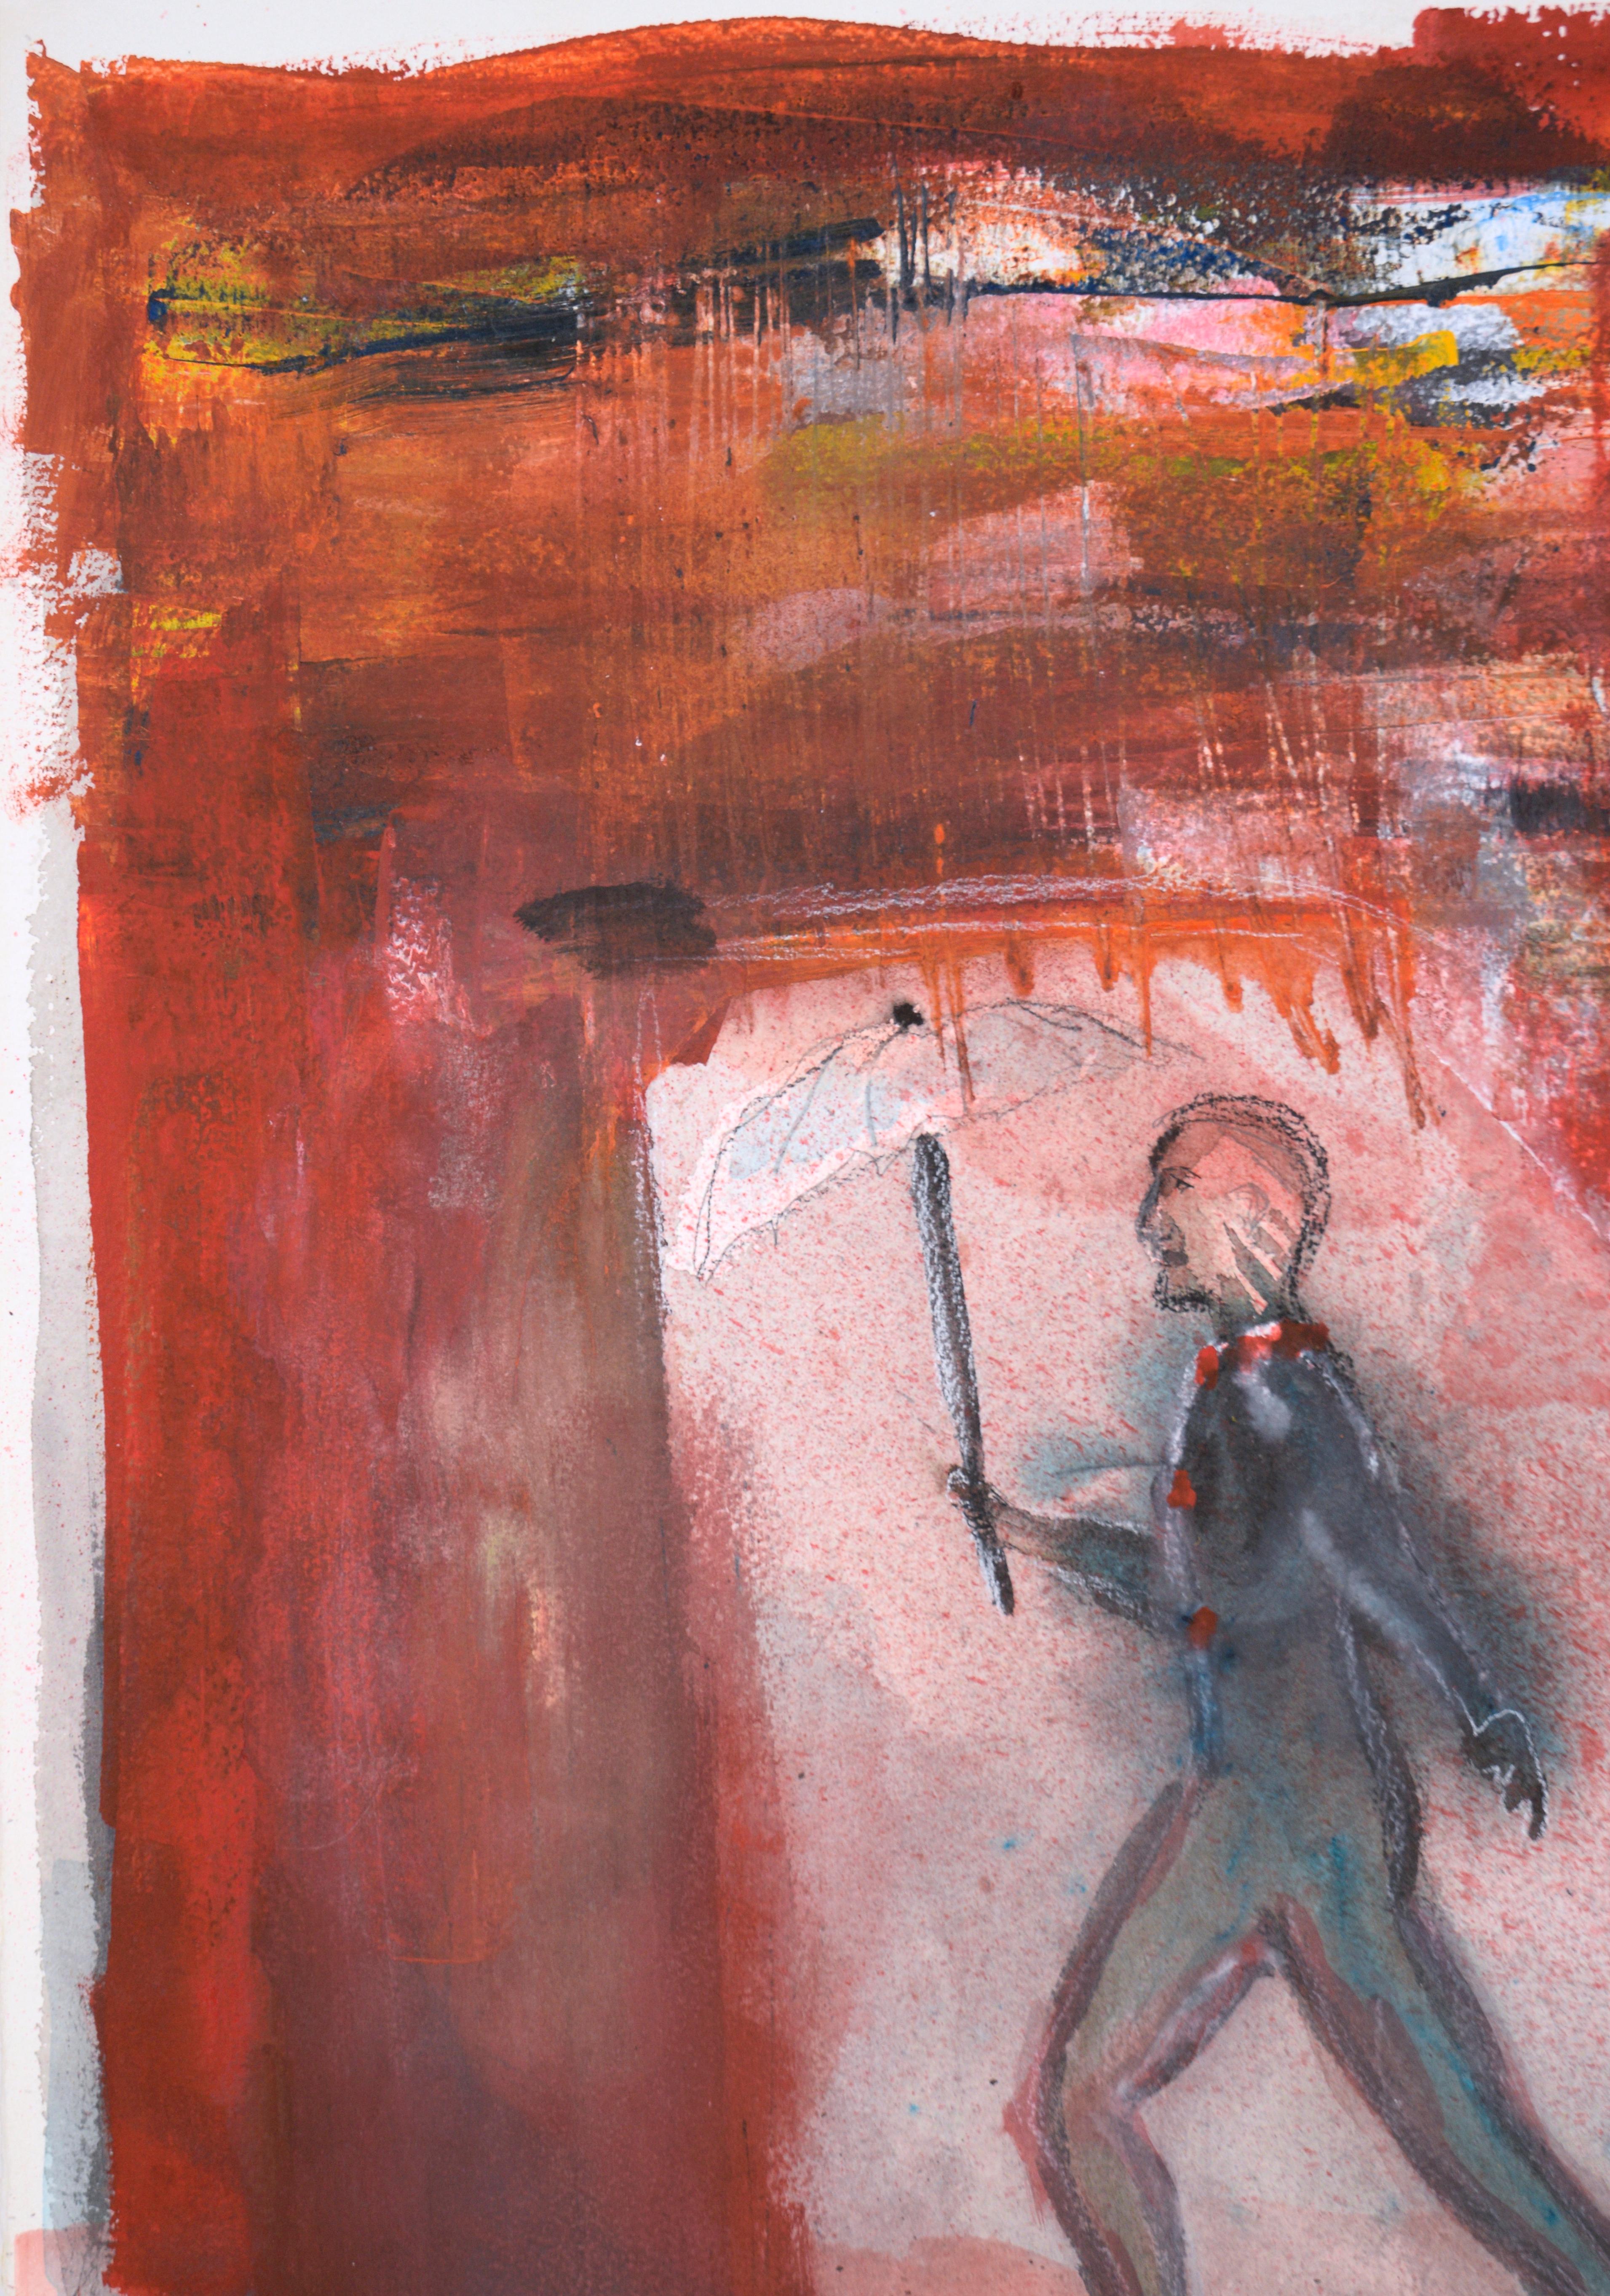 Der Mann auf Draht – Abstrakter Expressionismus „Die großen Wandendas“ – Painting von Ricardo de Silva